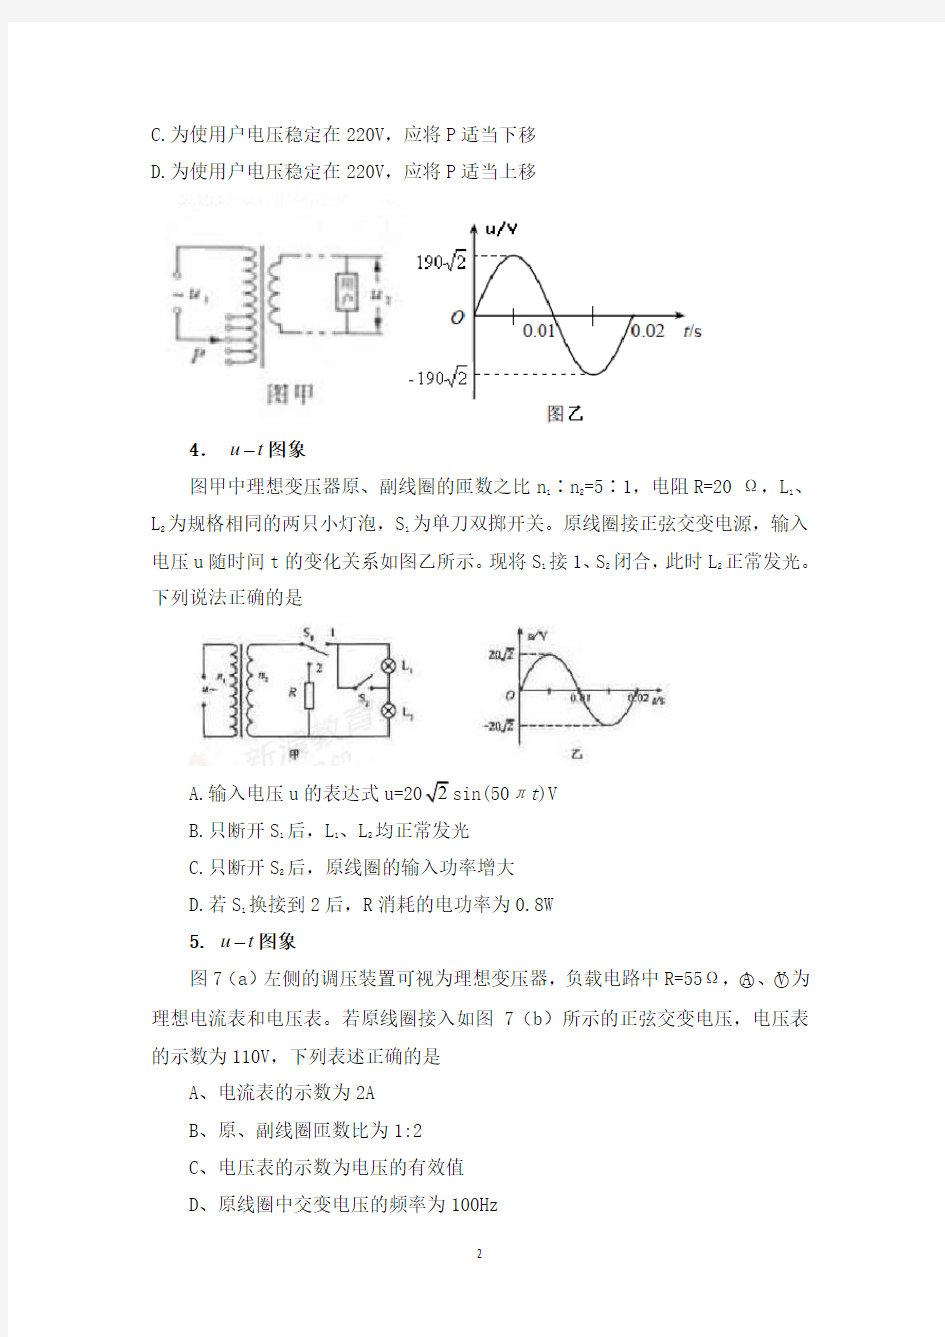 交流电图象-代数法(函数图像)在物理解题中的应用(原卷版)